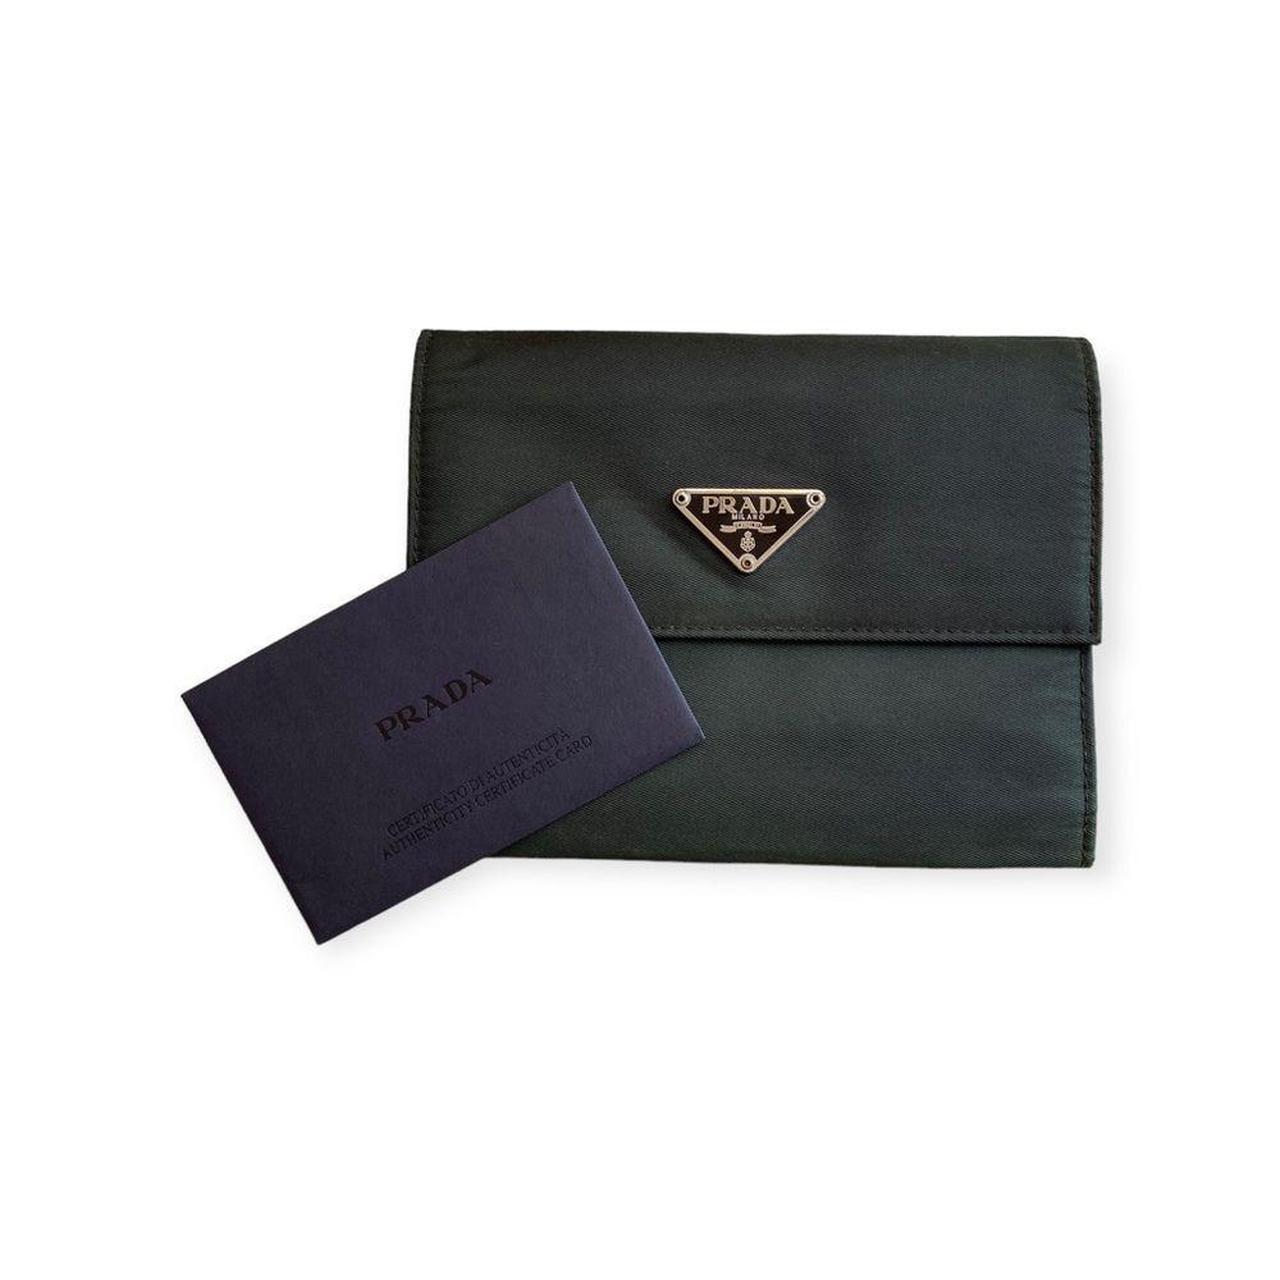 Prada Women's Wallet